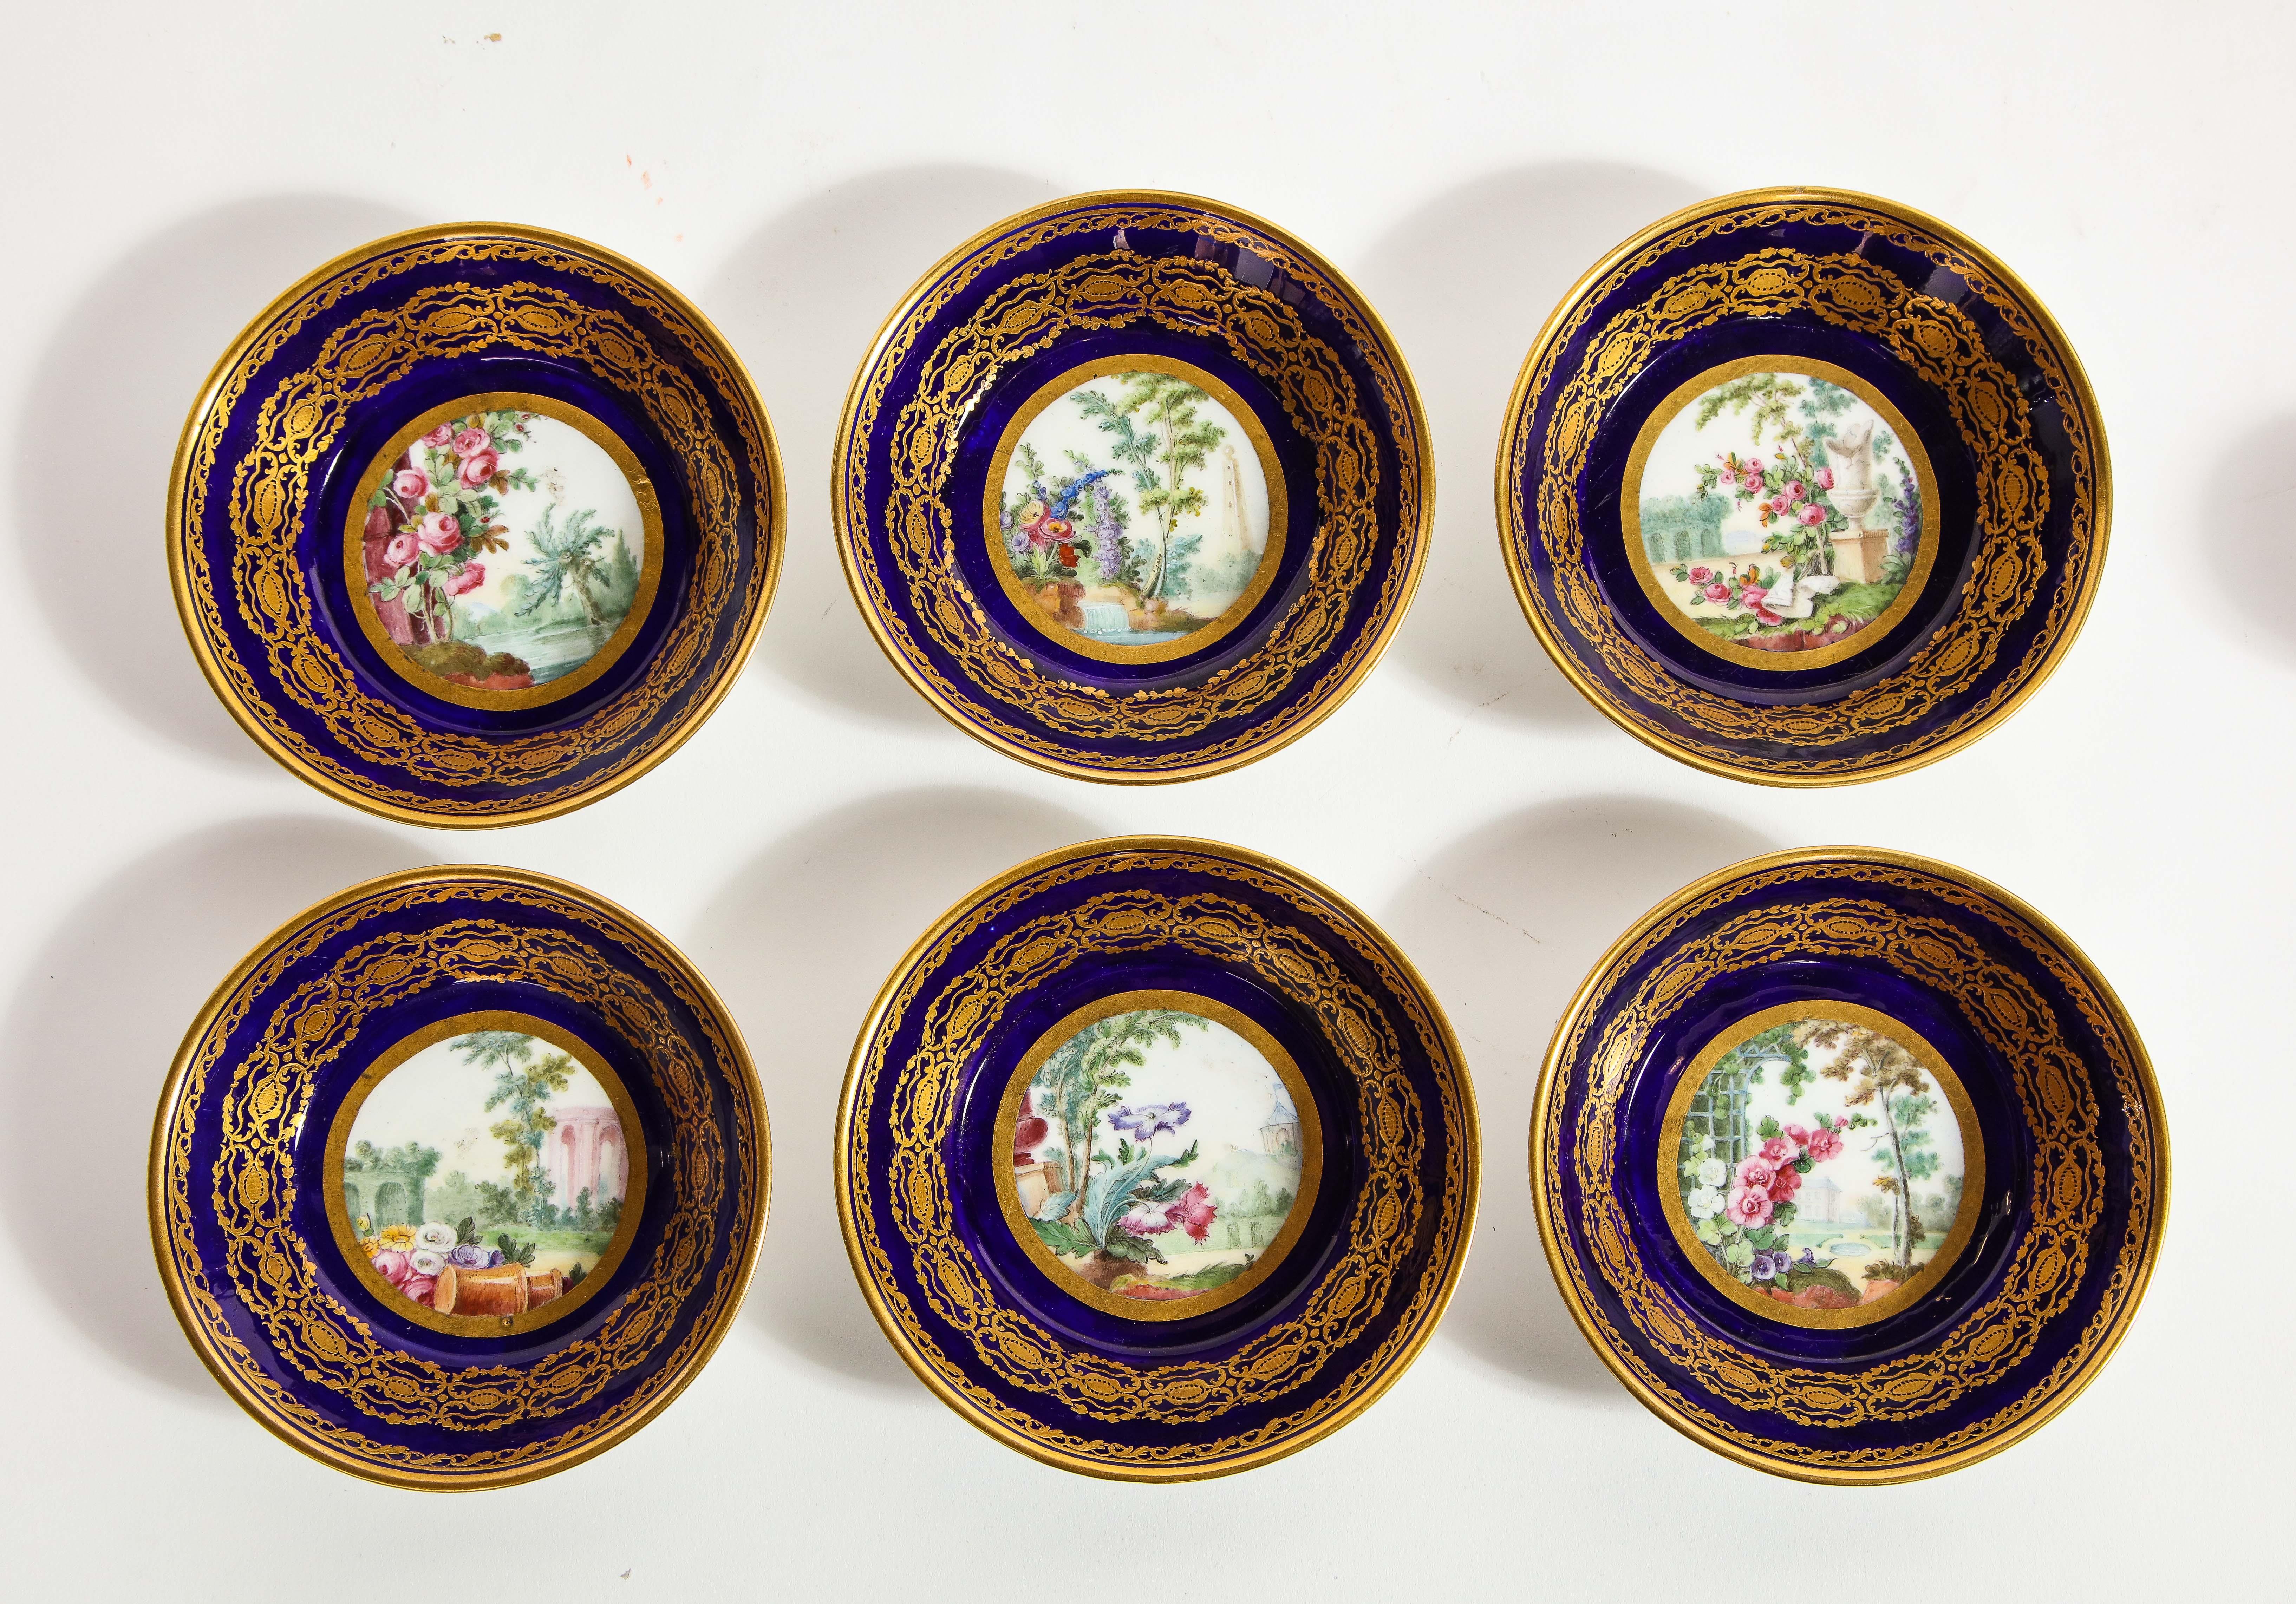 Louis XVI Service à thé complet en porcelaine de Sèvres du XVIIIe siècle, avec marque de peintres et de guildes